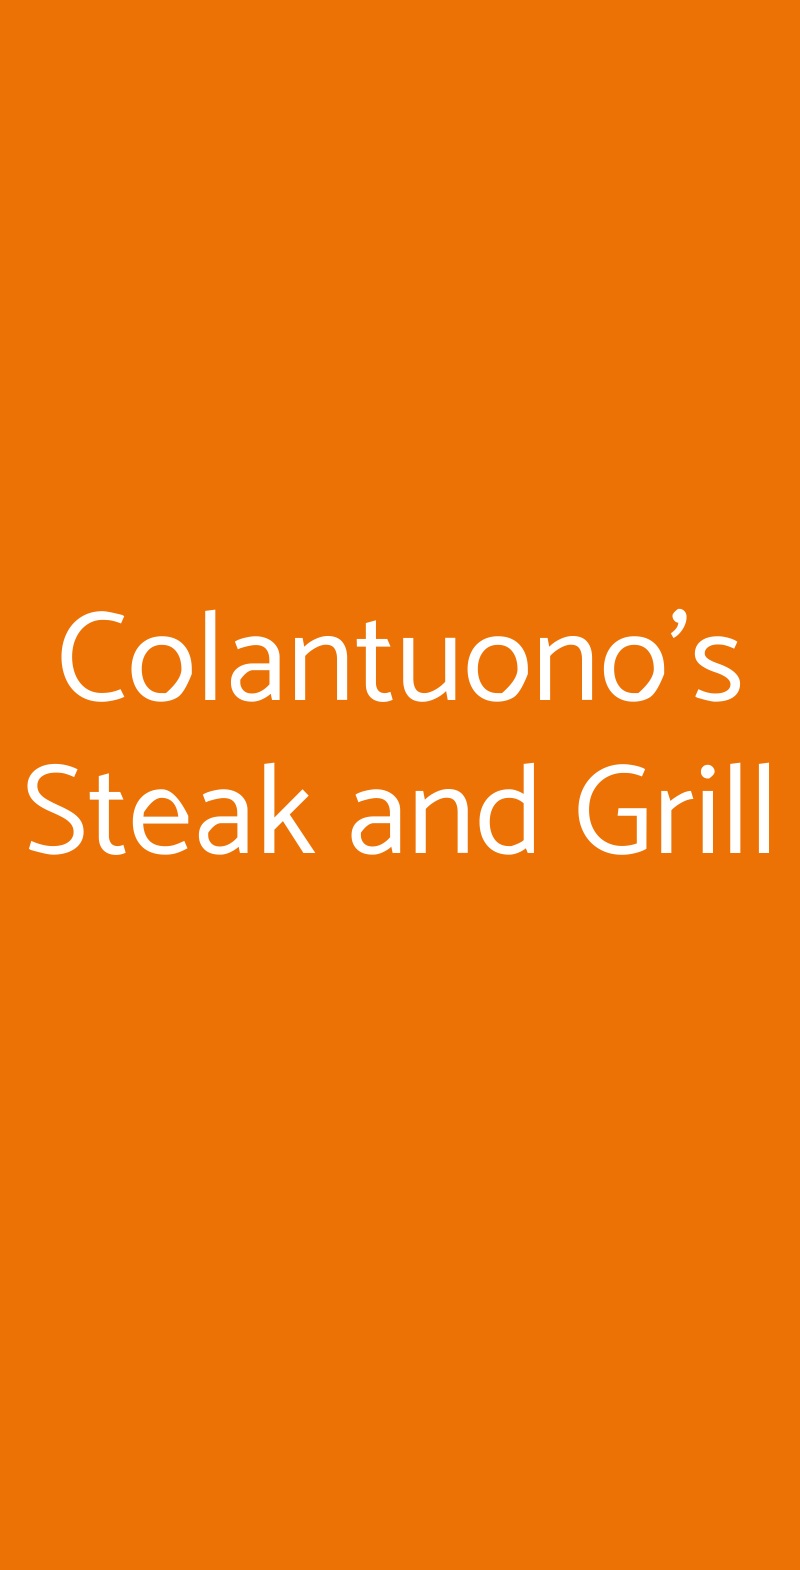 Colantuono's Steak and Grill Napoli menù 1 pagina